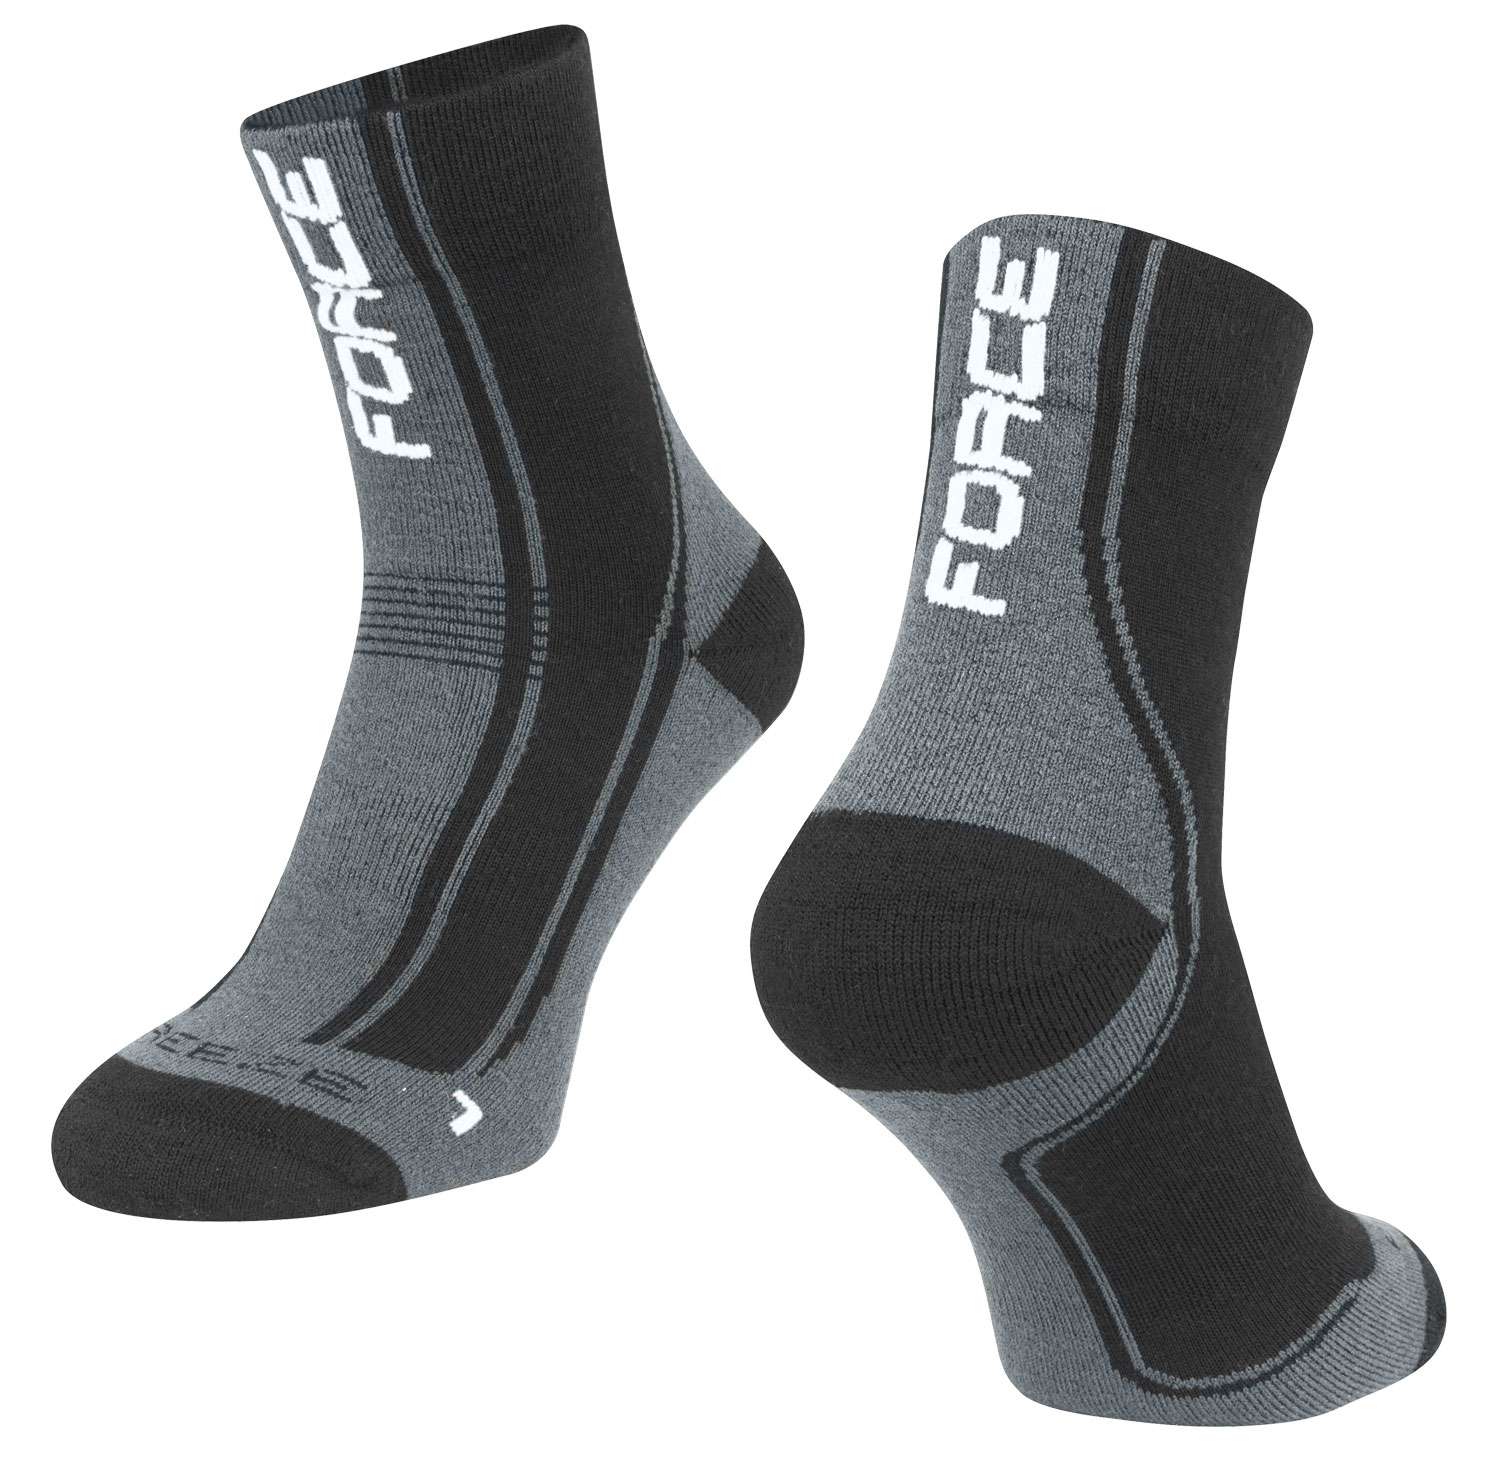 ponožky F FREEZE, černo-šedo-bílé L-XL/42-47